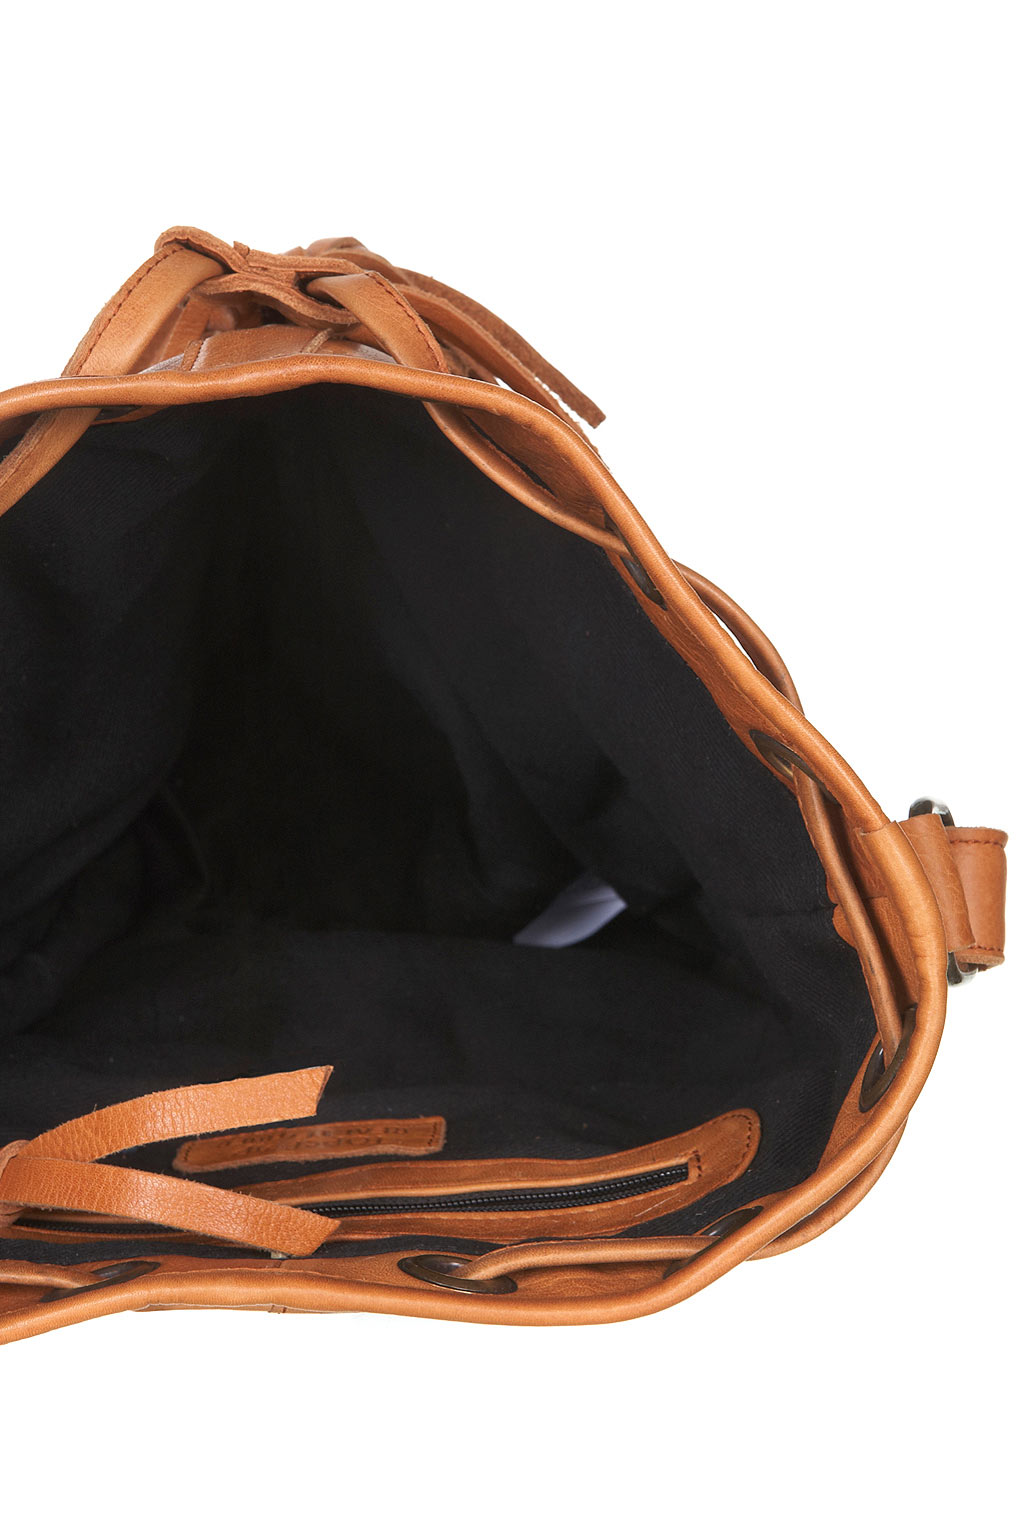 TOPSHOP Embossed Leather Duffle Bag in Tan (Brown) - Lyst